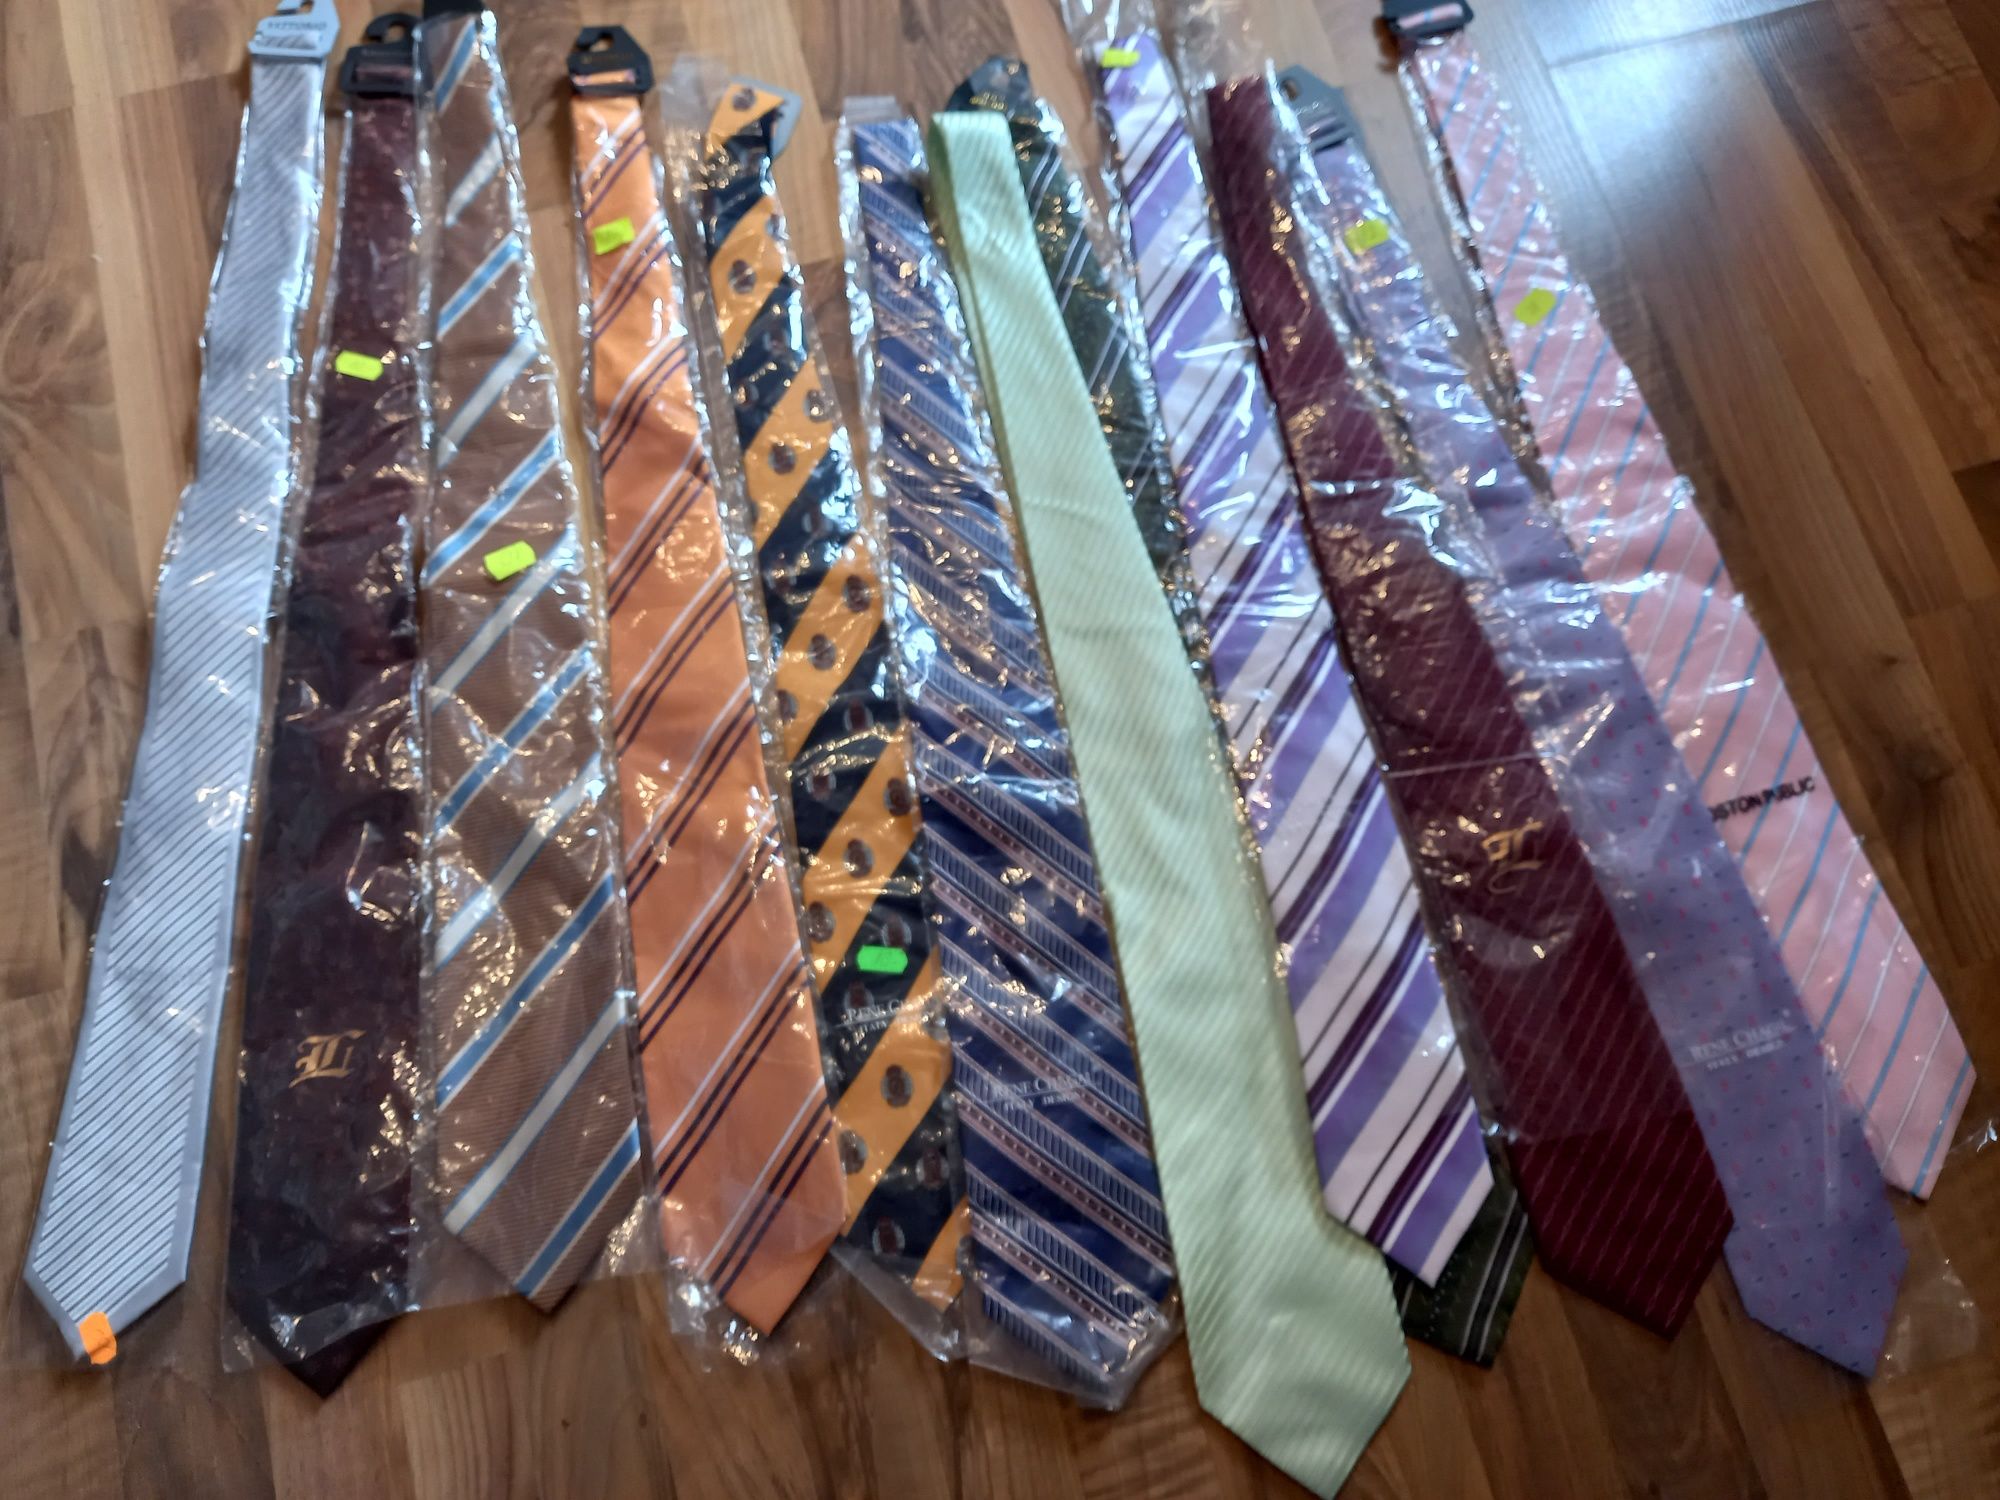 Krawaty różne wzory